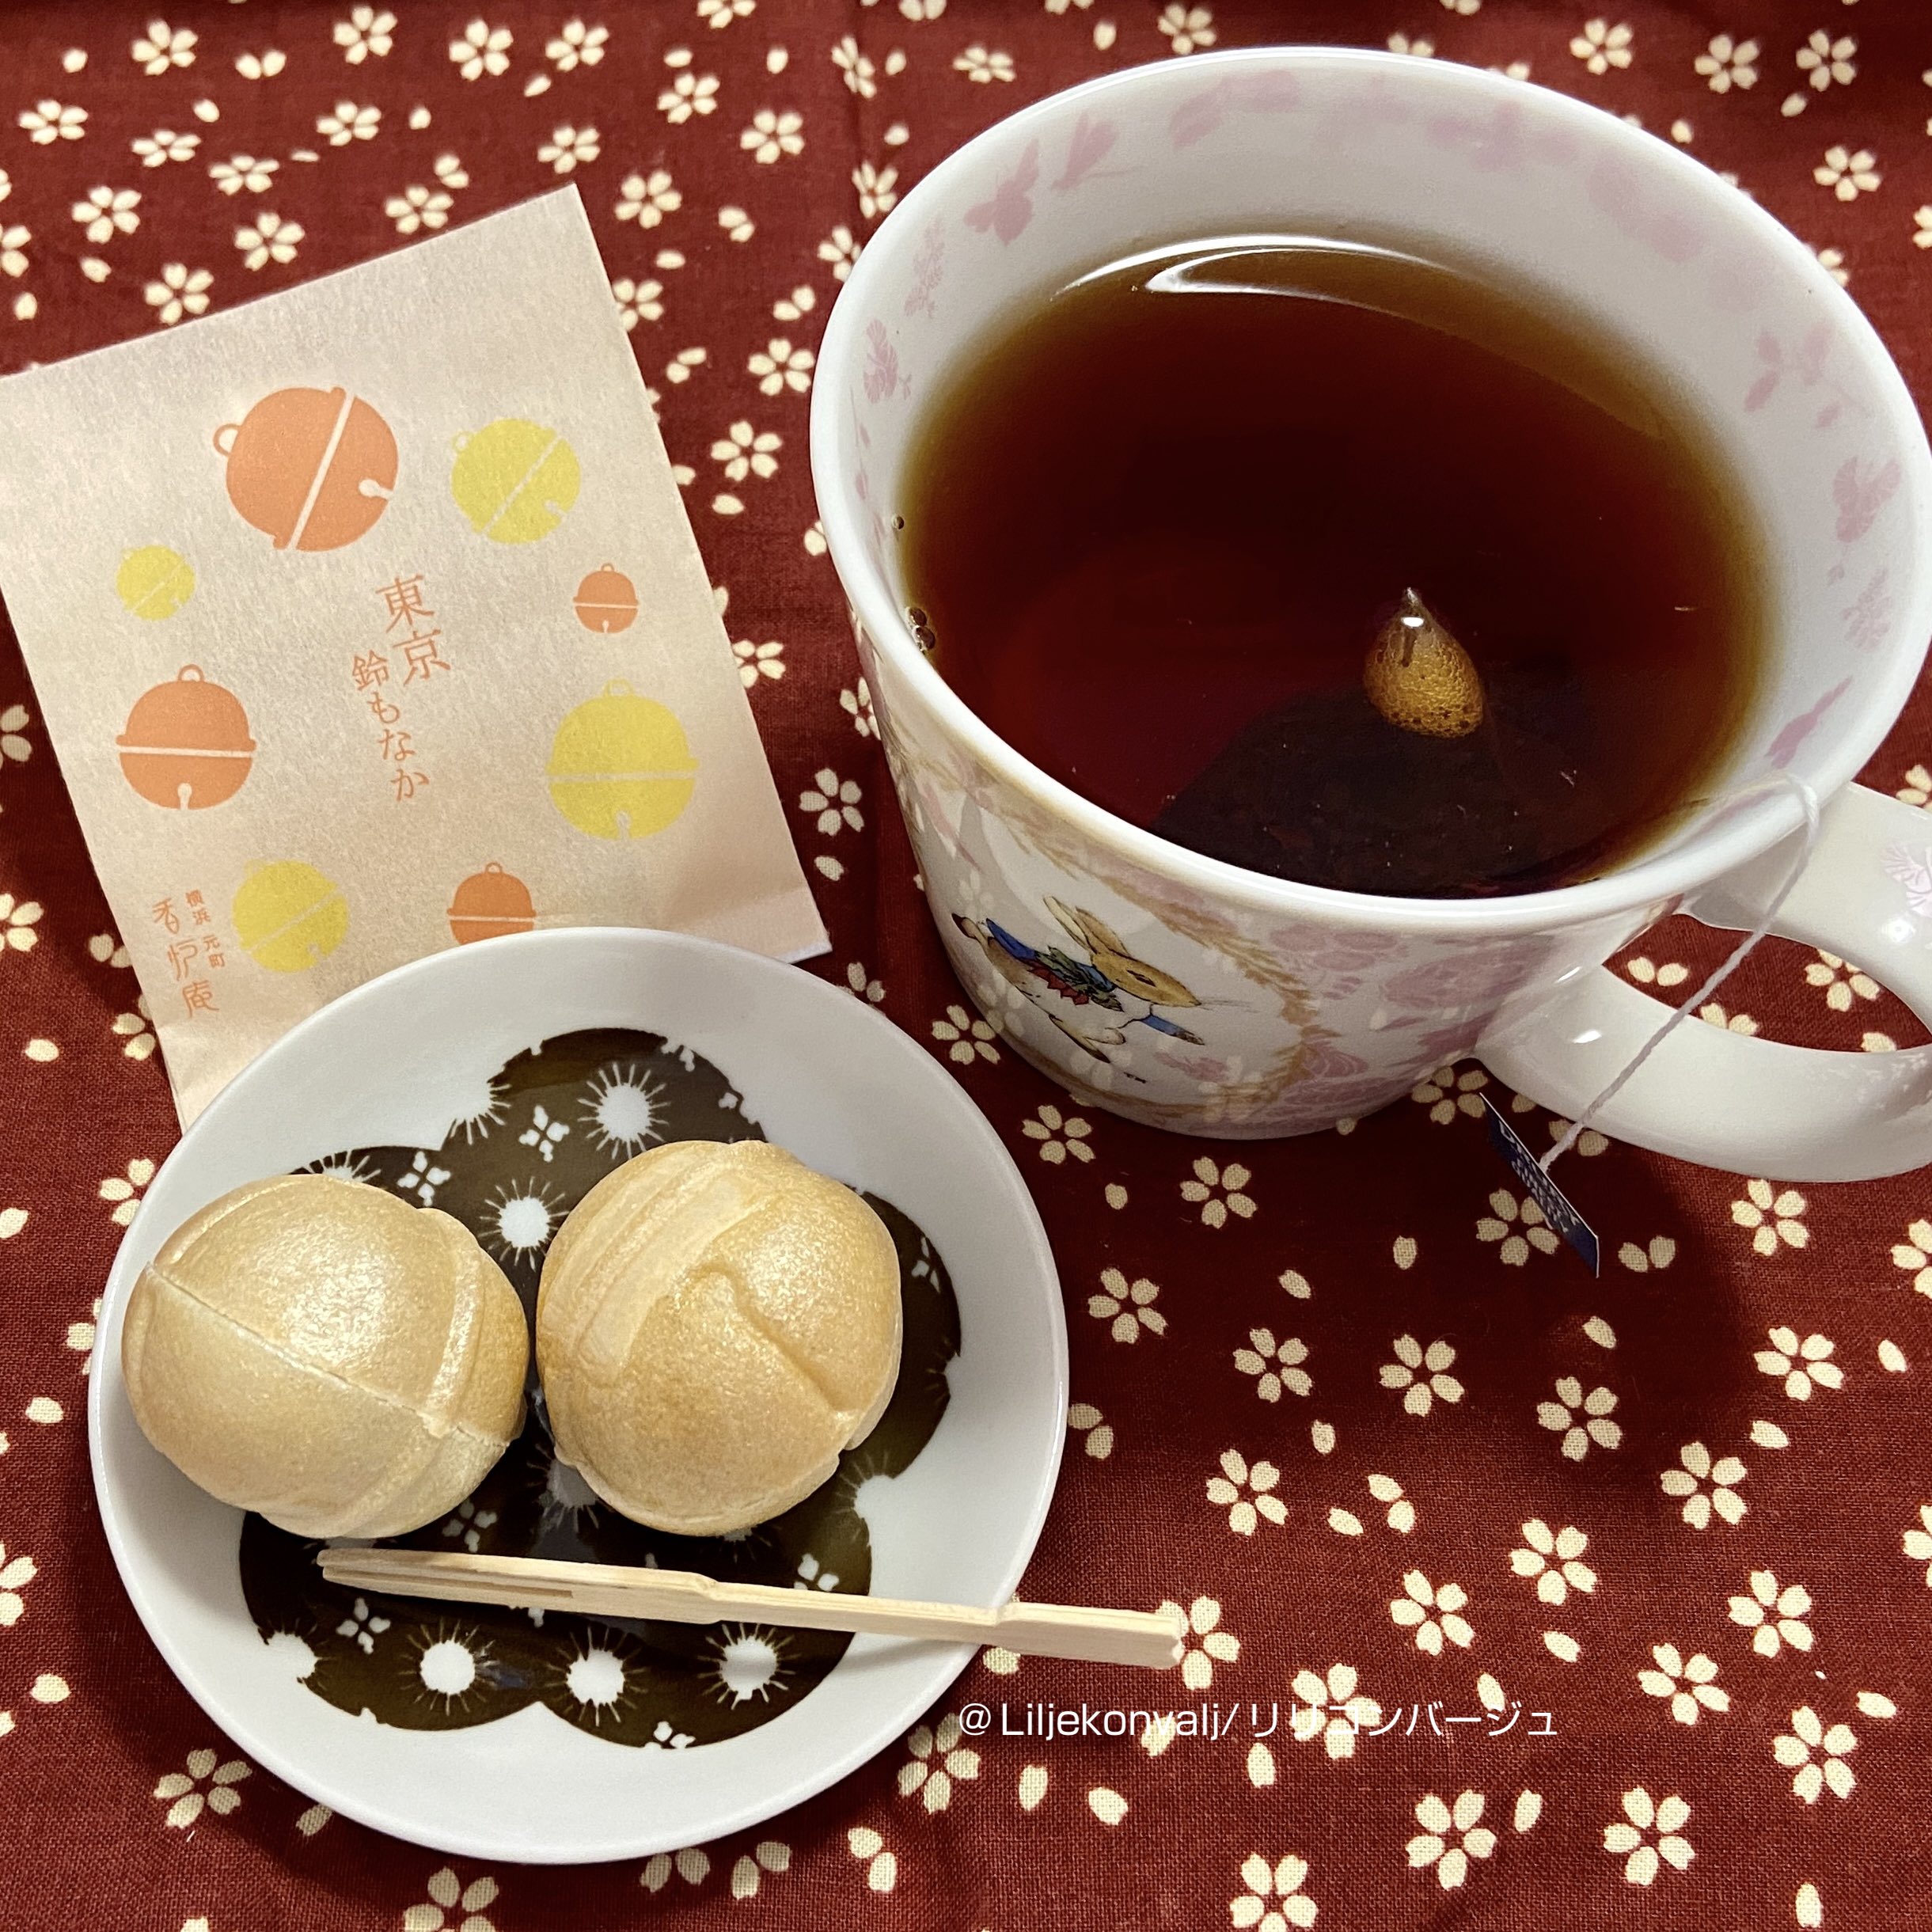 和菓子に紅茶